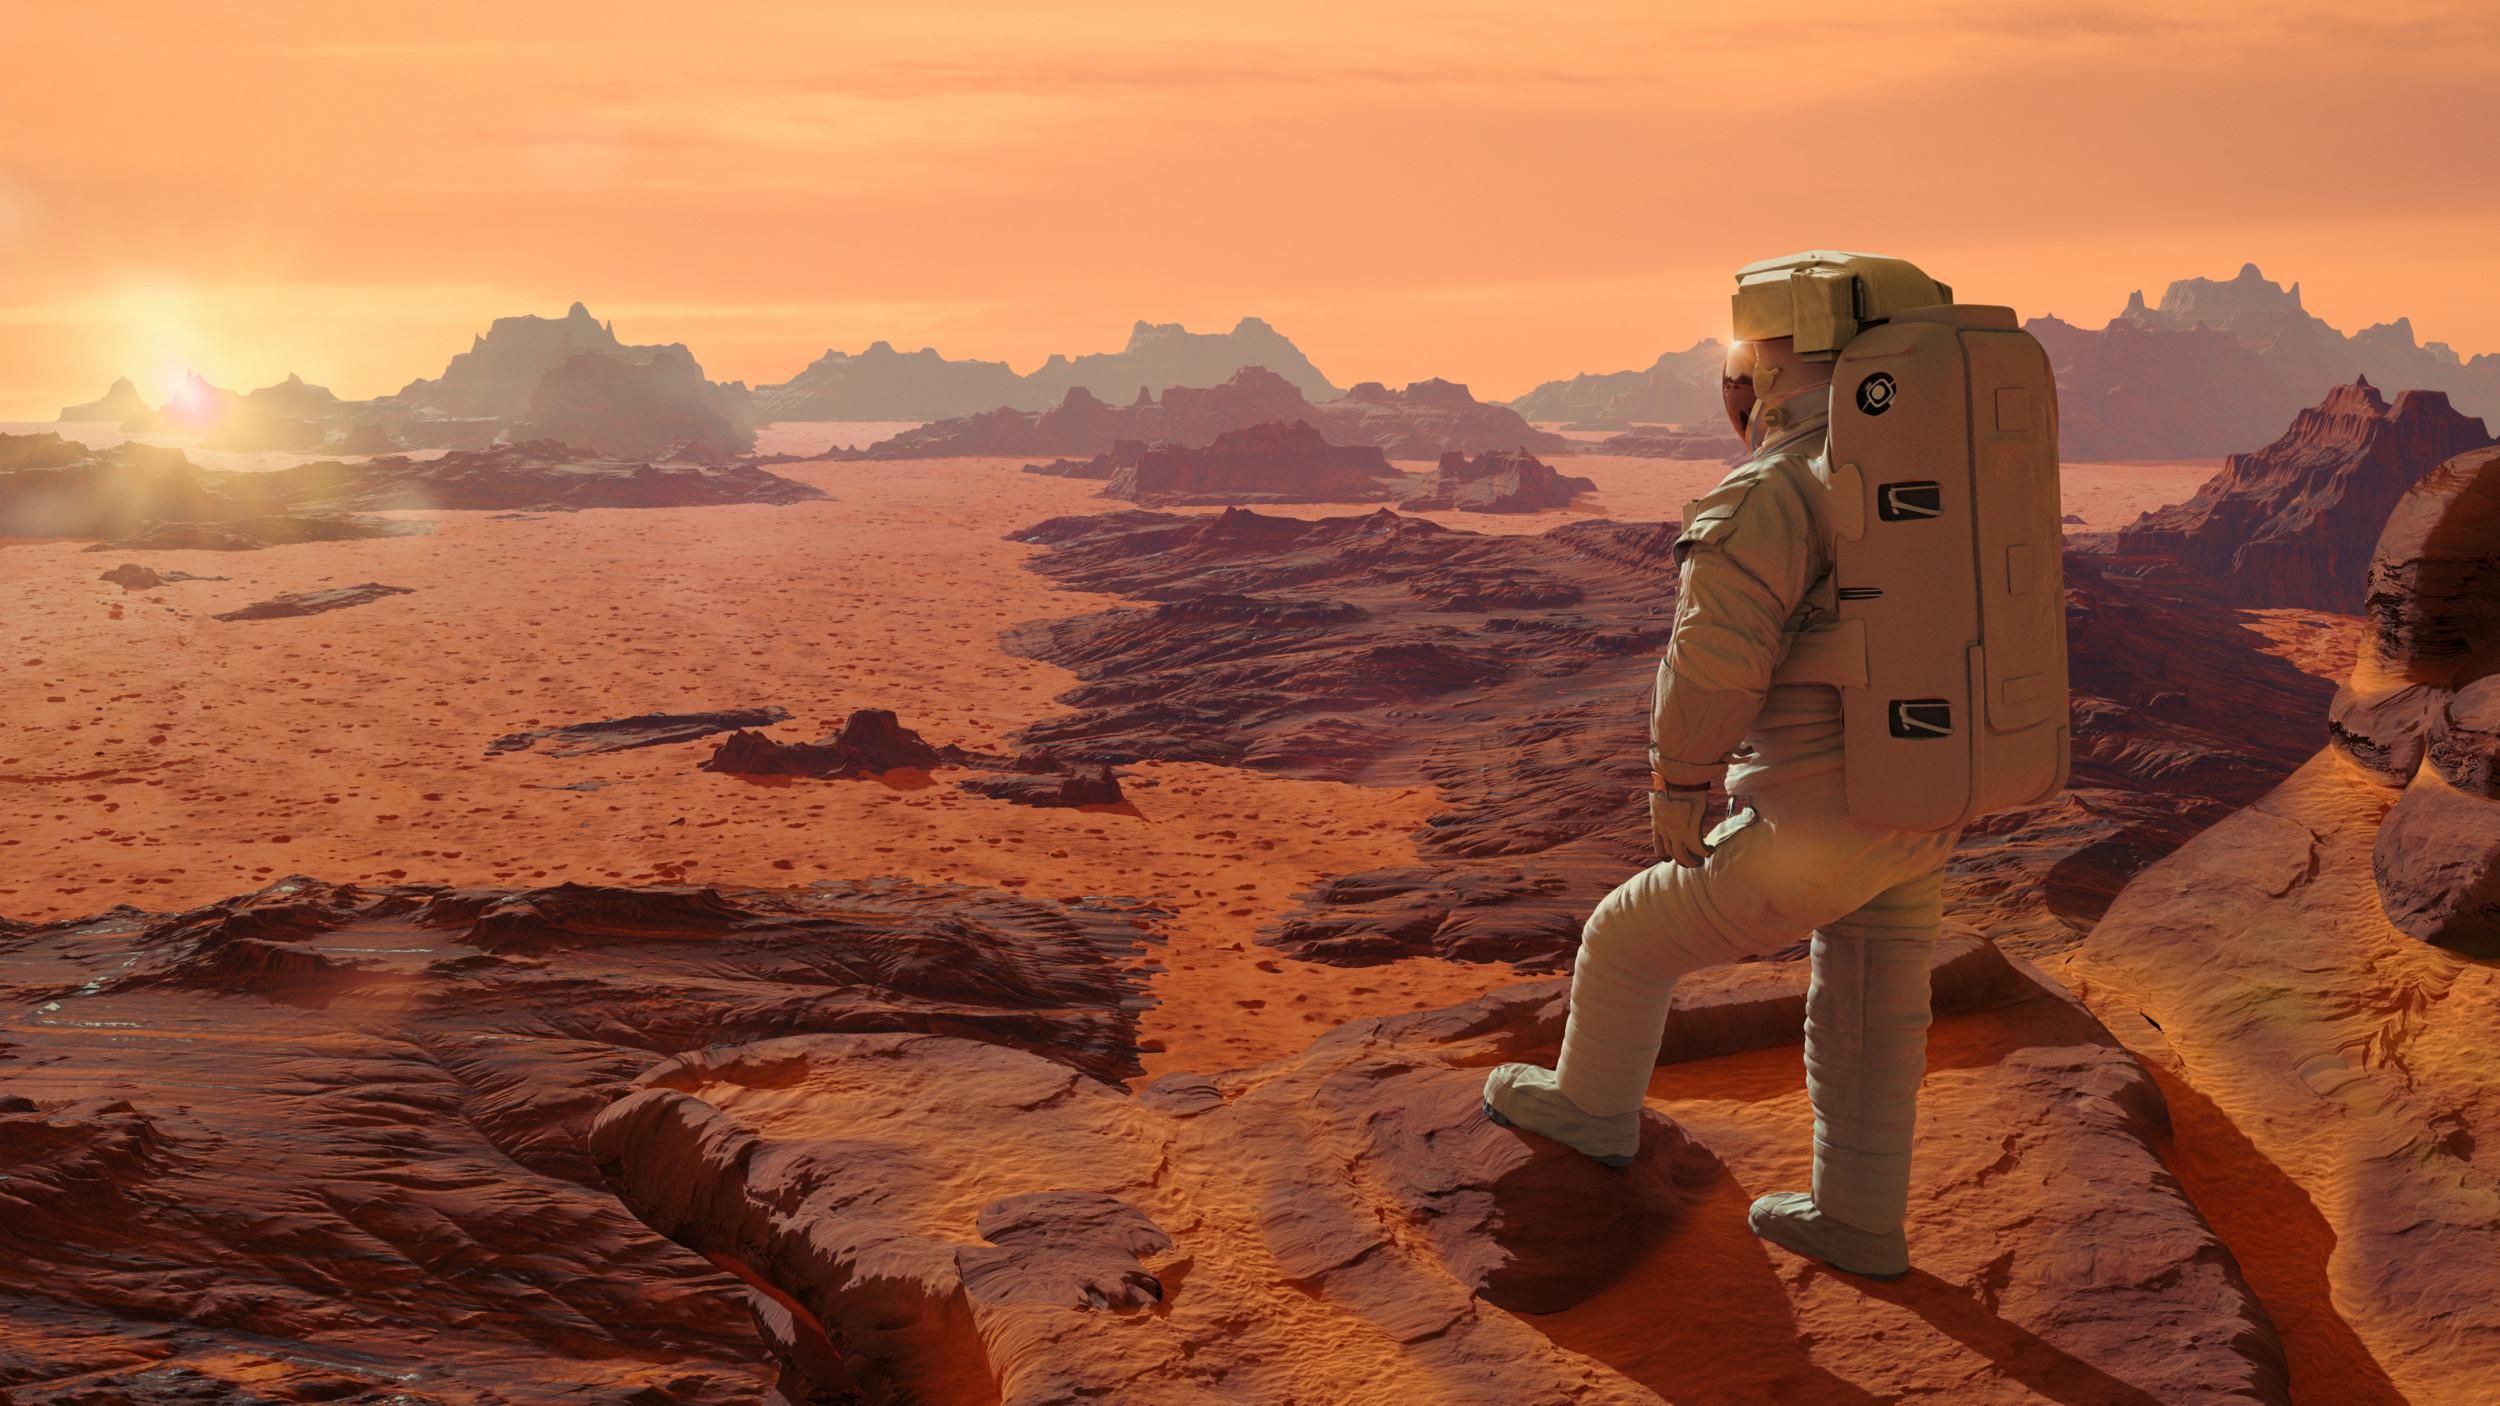 Билеты на Марс смогут позволить себе многие жители Земли, – Илон Маск - Техно